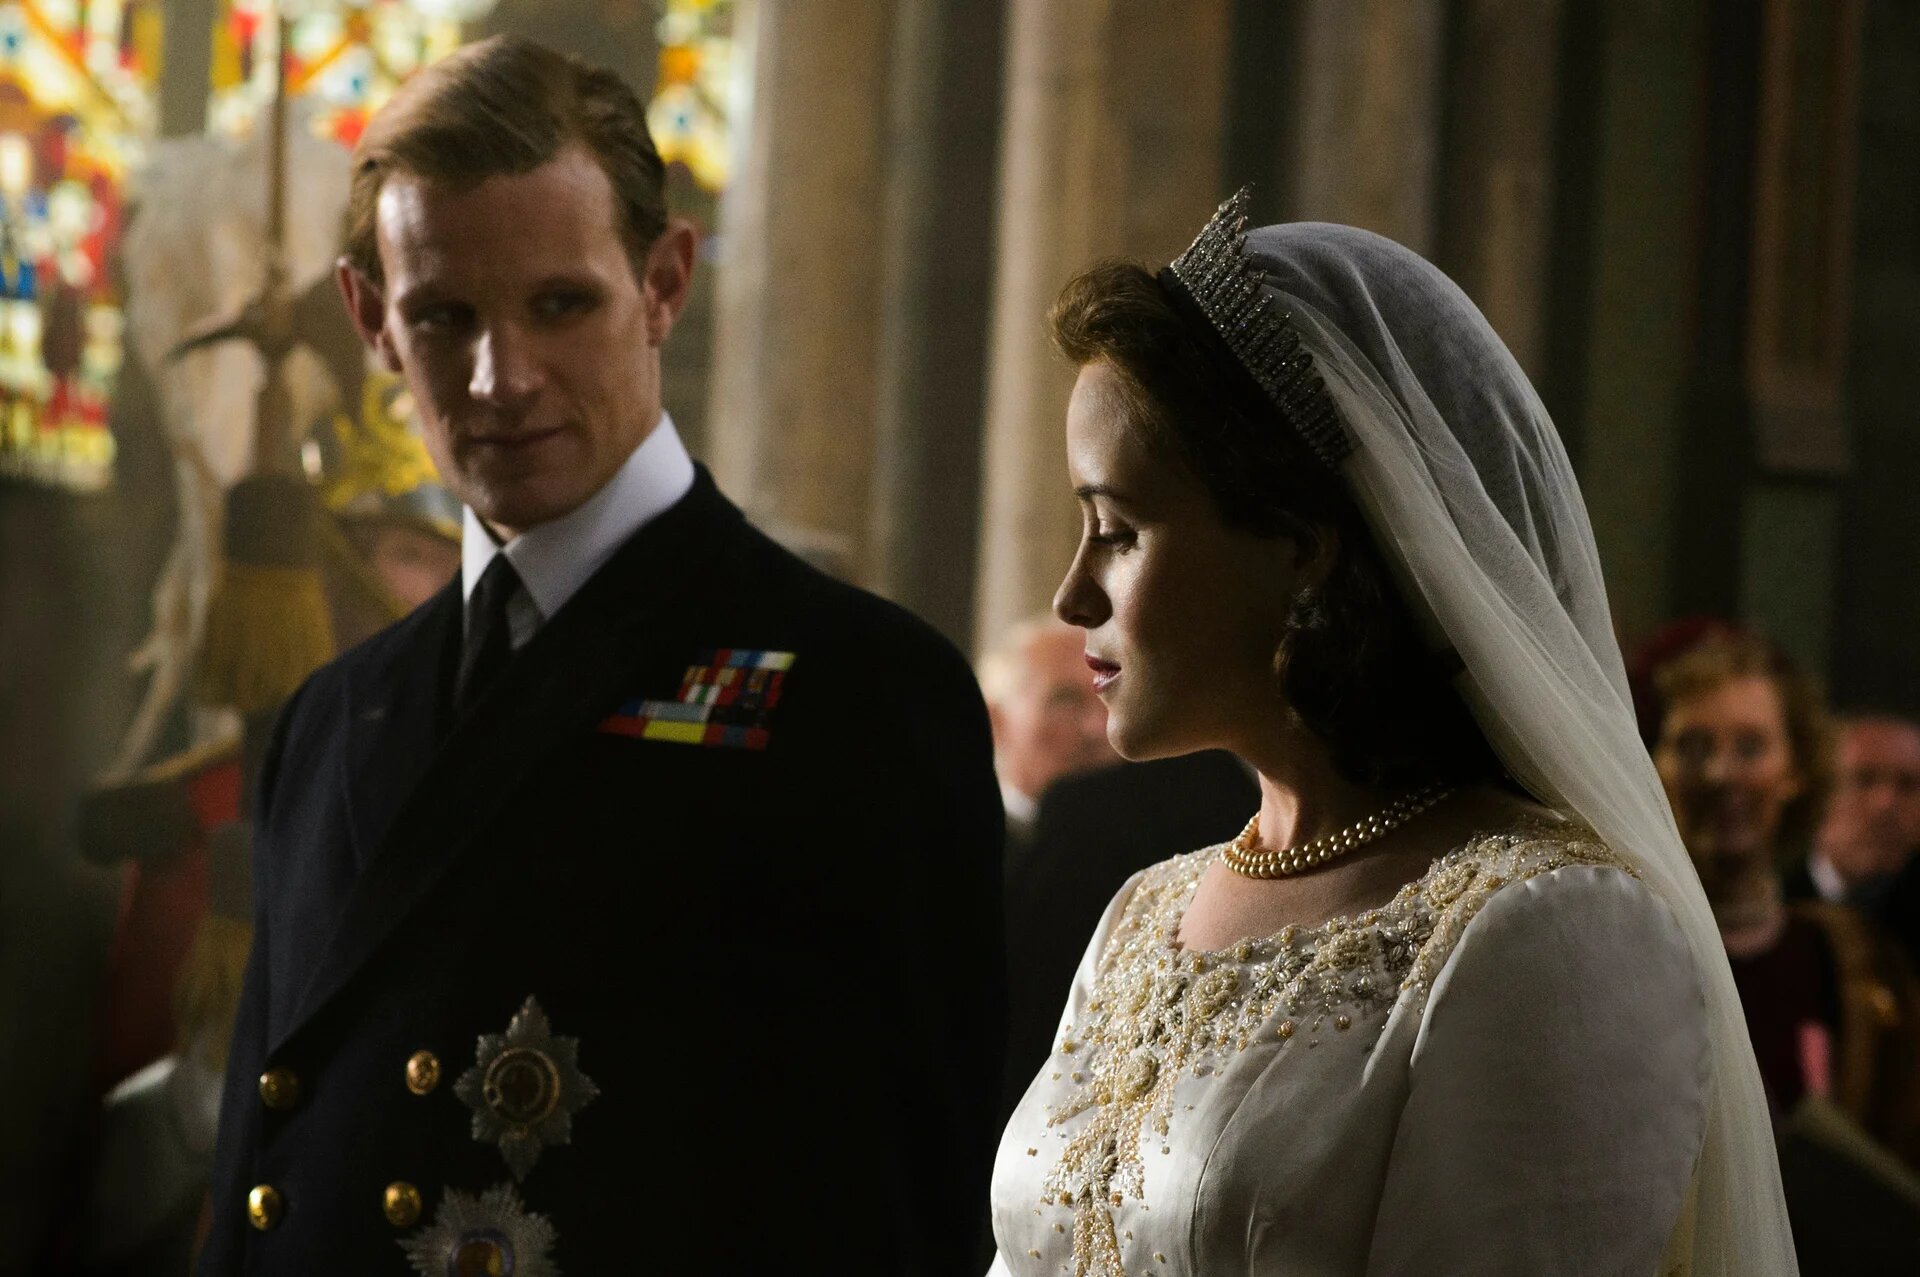 Просмотры сериала «Корона» выросли на 800% после смерти королевы Елизаветы II